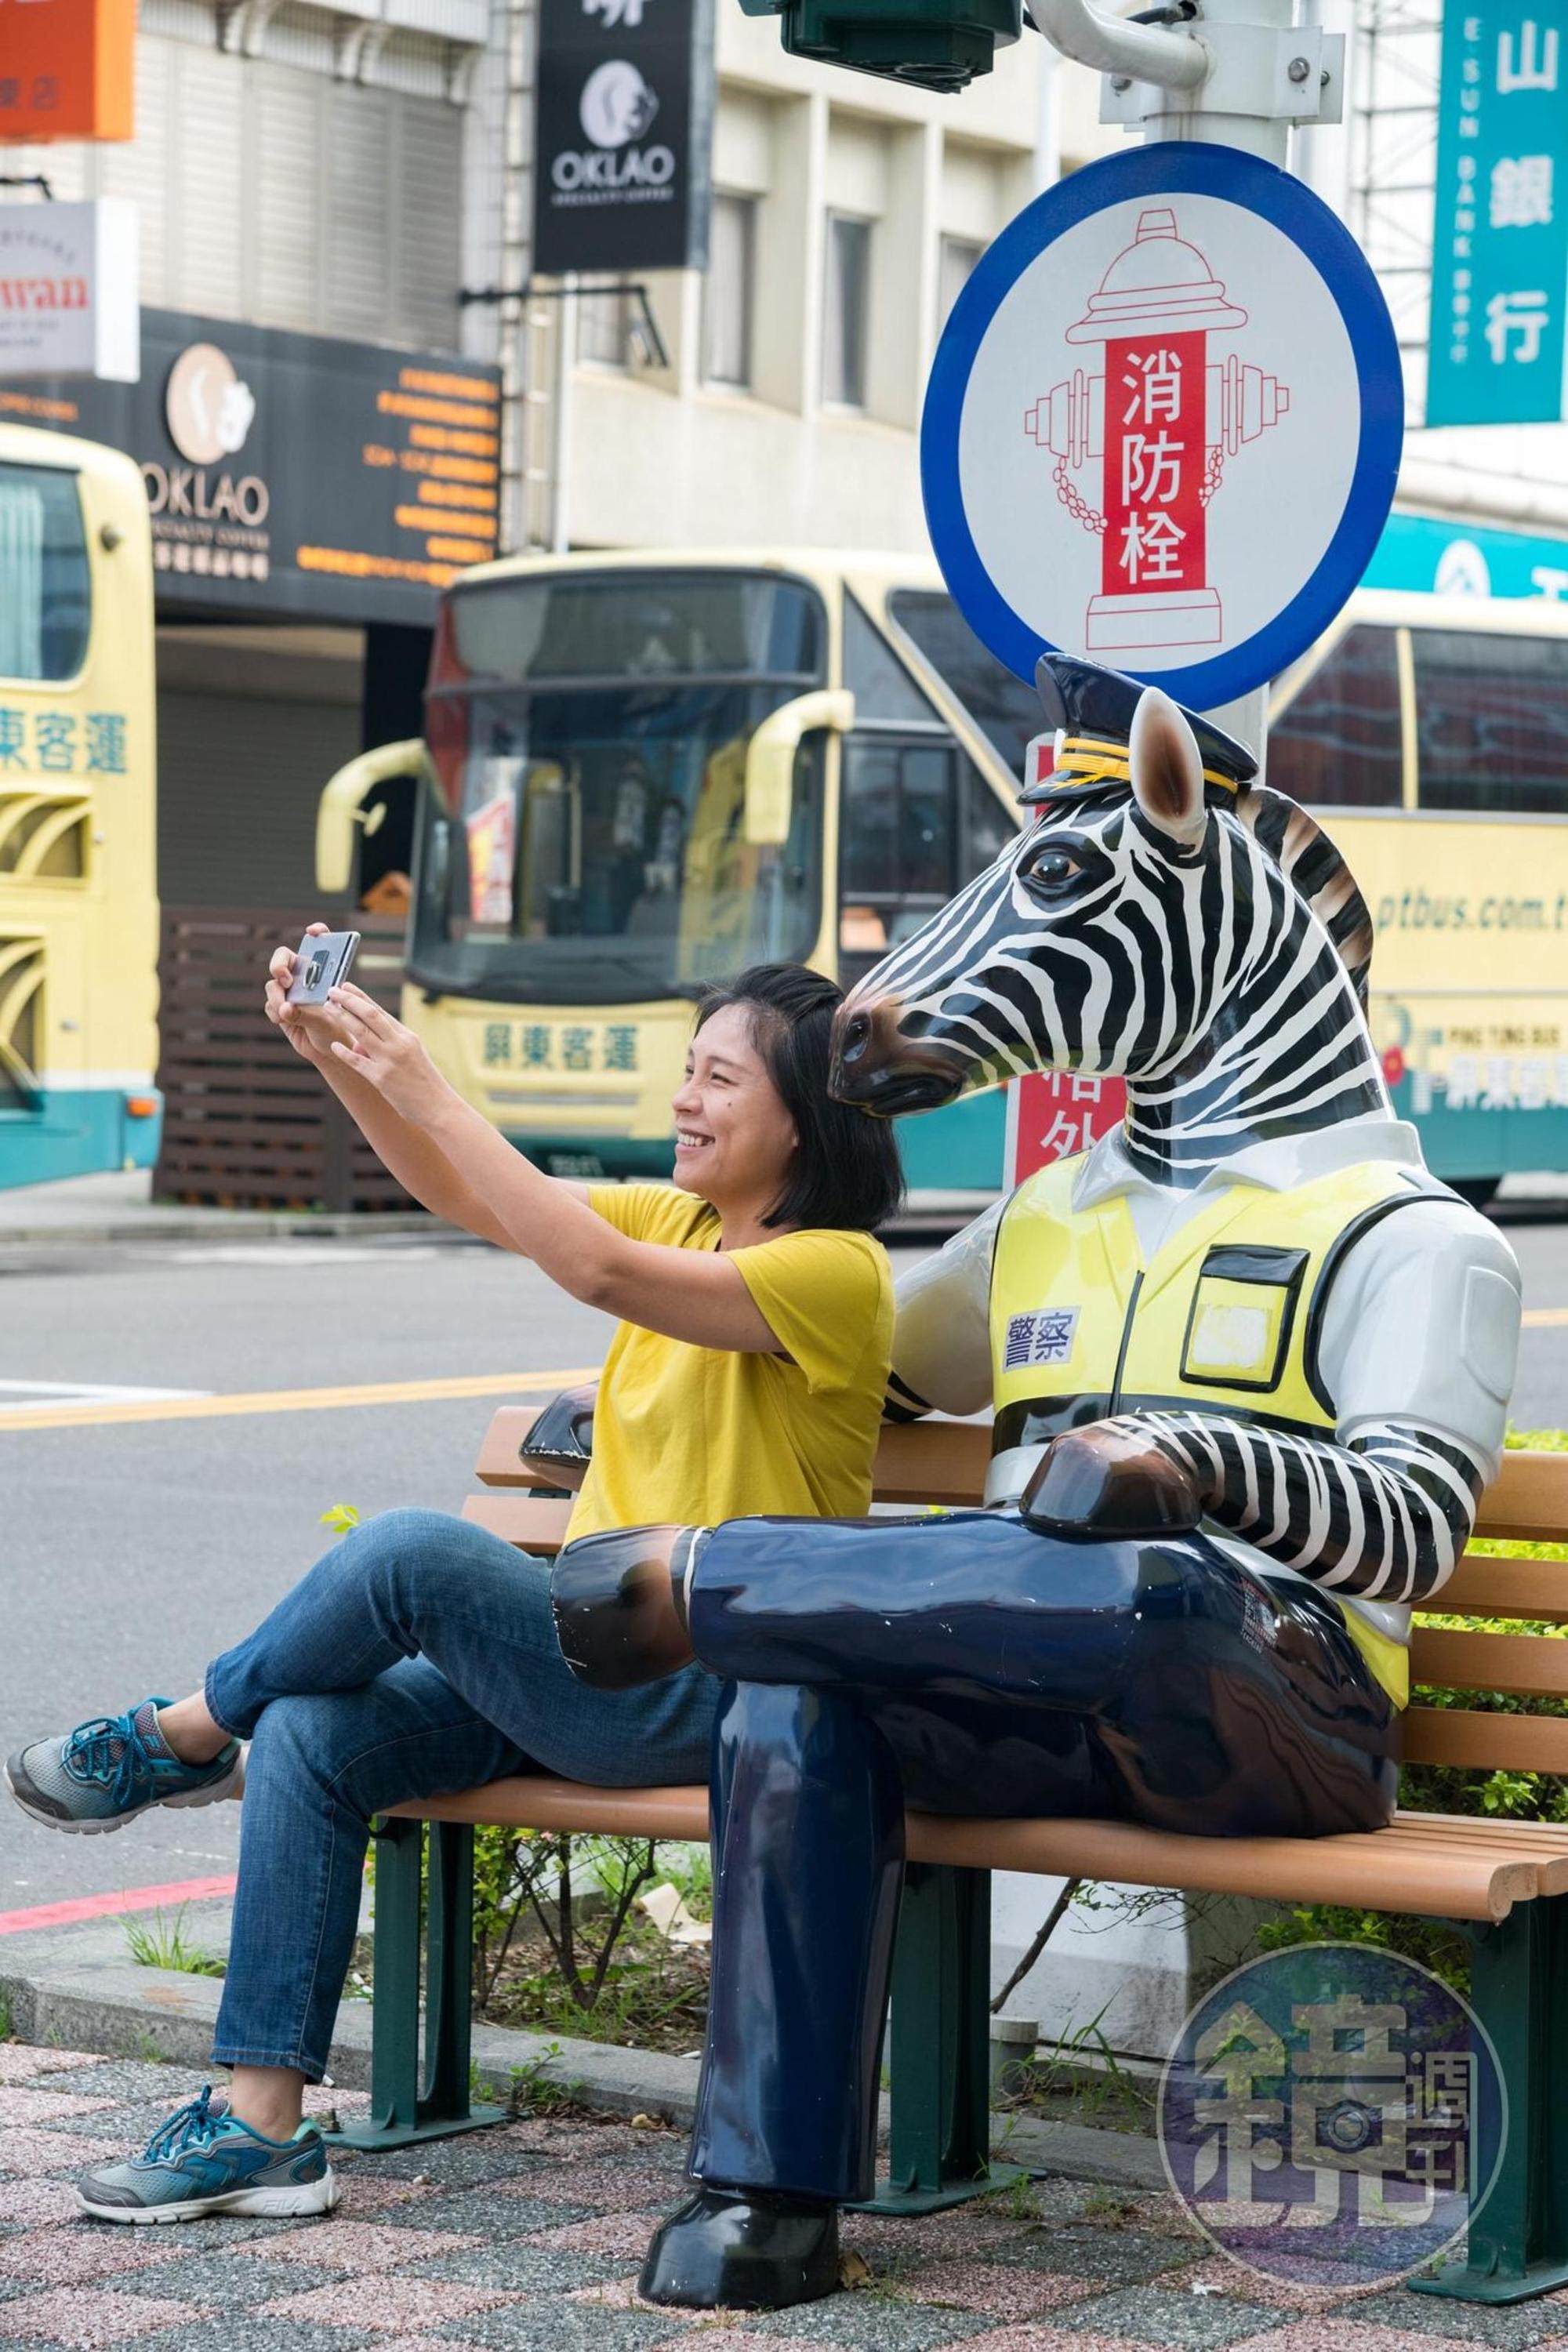 屏東市街頭出現有趣的斑馬交警。